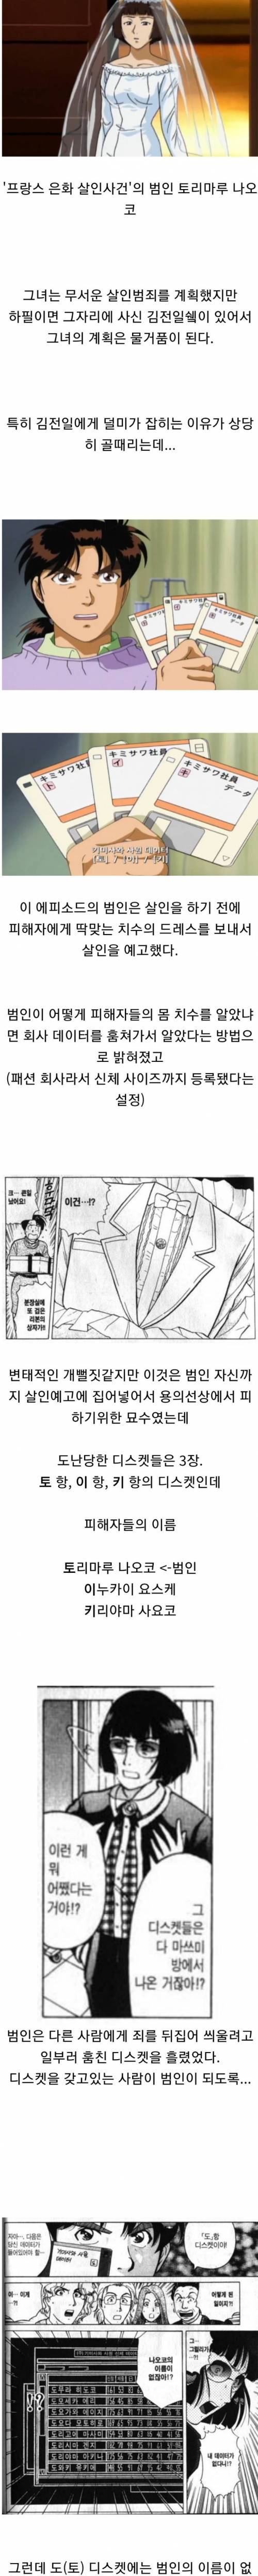 [스압] 투니버스 초월번역 레전드.jpg